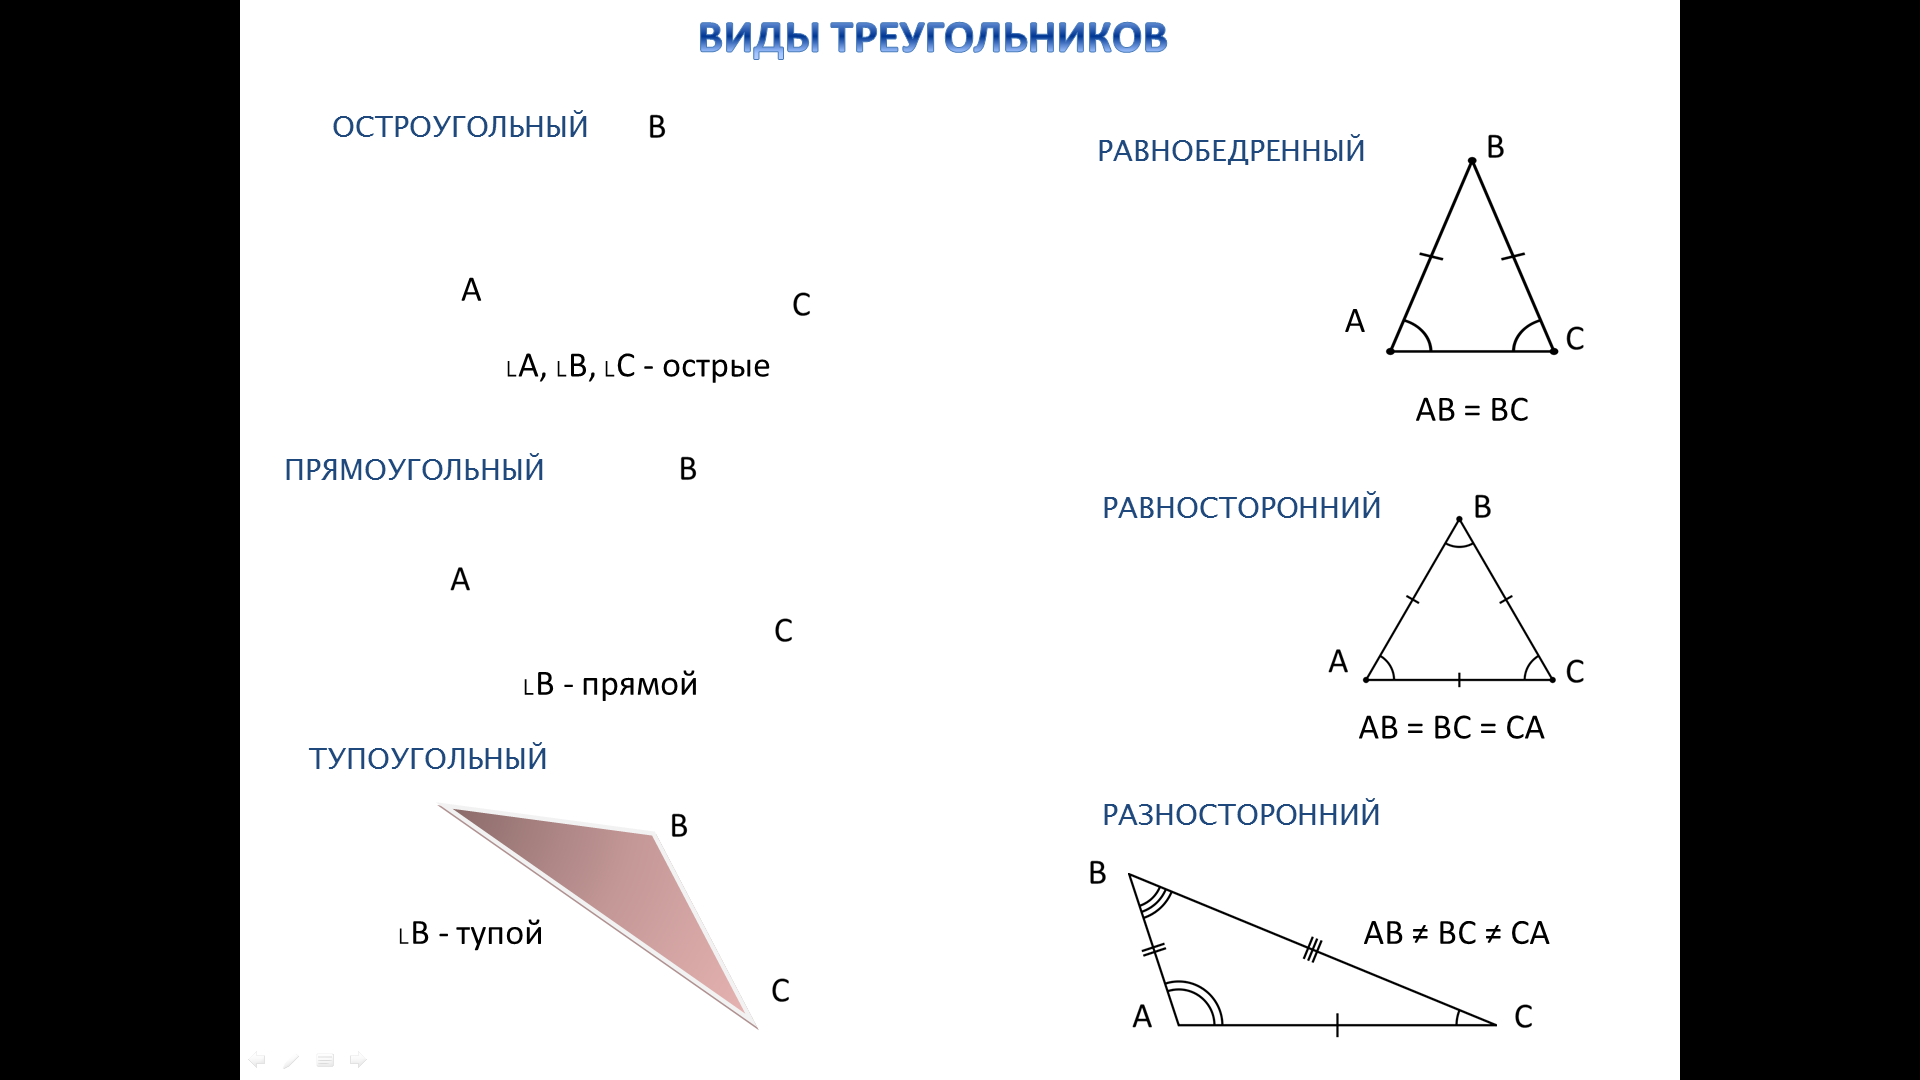 4 любой равнобедренный треугольник является тупоугольным. Виды треугольников. Равнобедренный остроугольный треугольник. Равнобедренный треугольник тупоугольный треугольник.